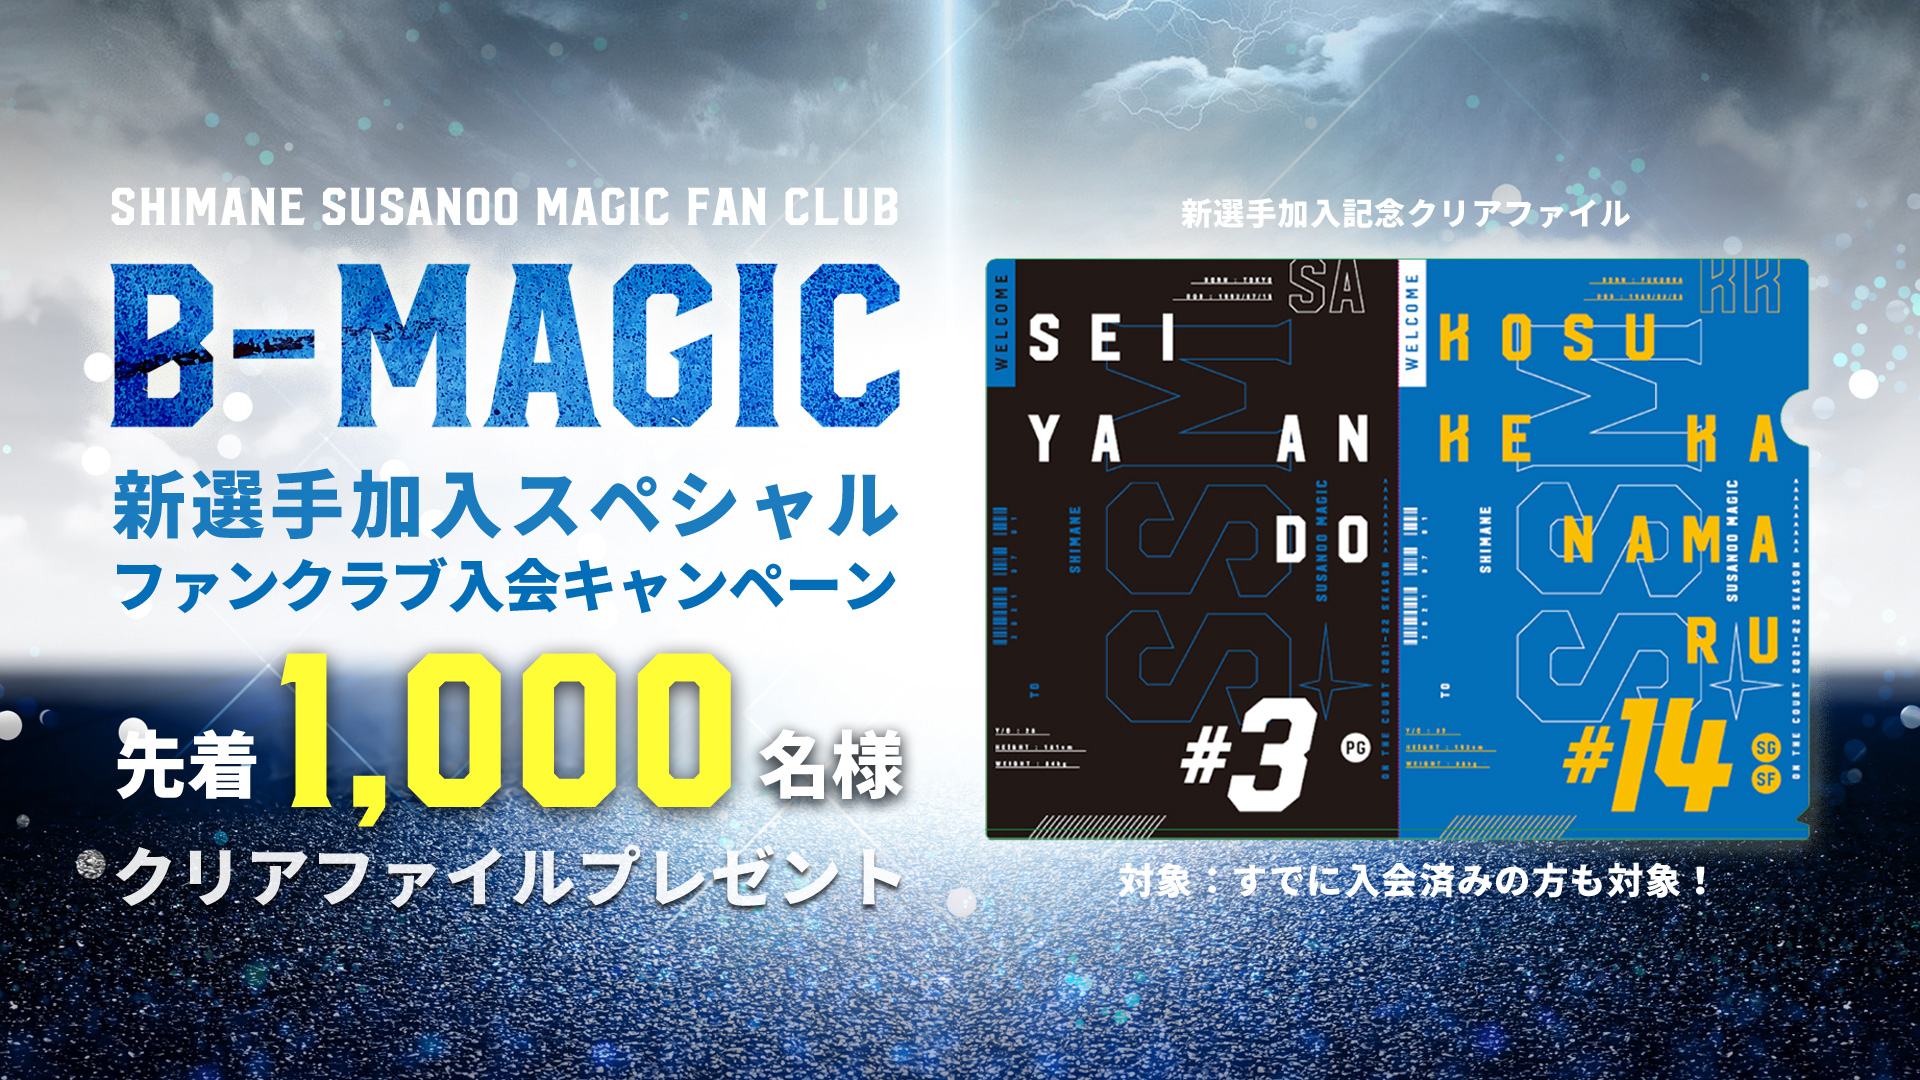 新選手加入記念 島根スサノオマジックファンクラブ「B-MAGIC」特別入会